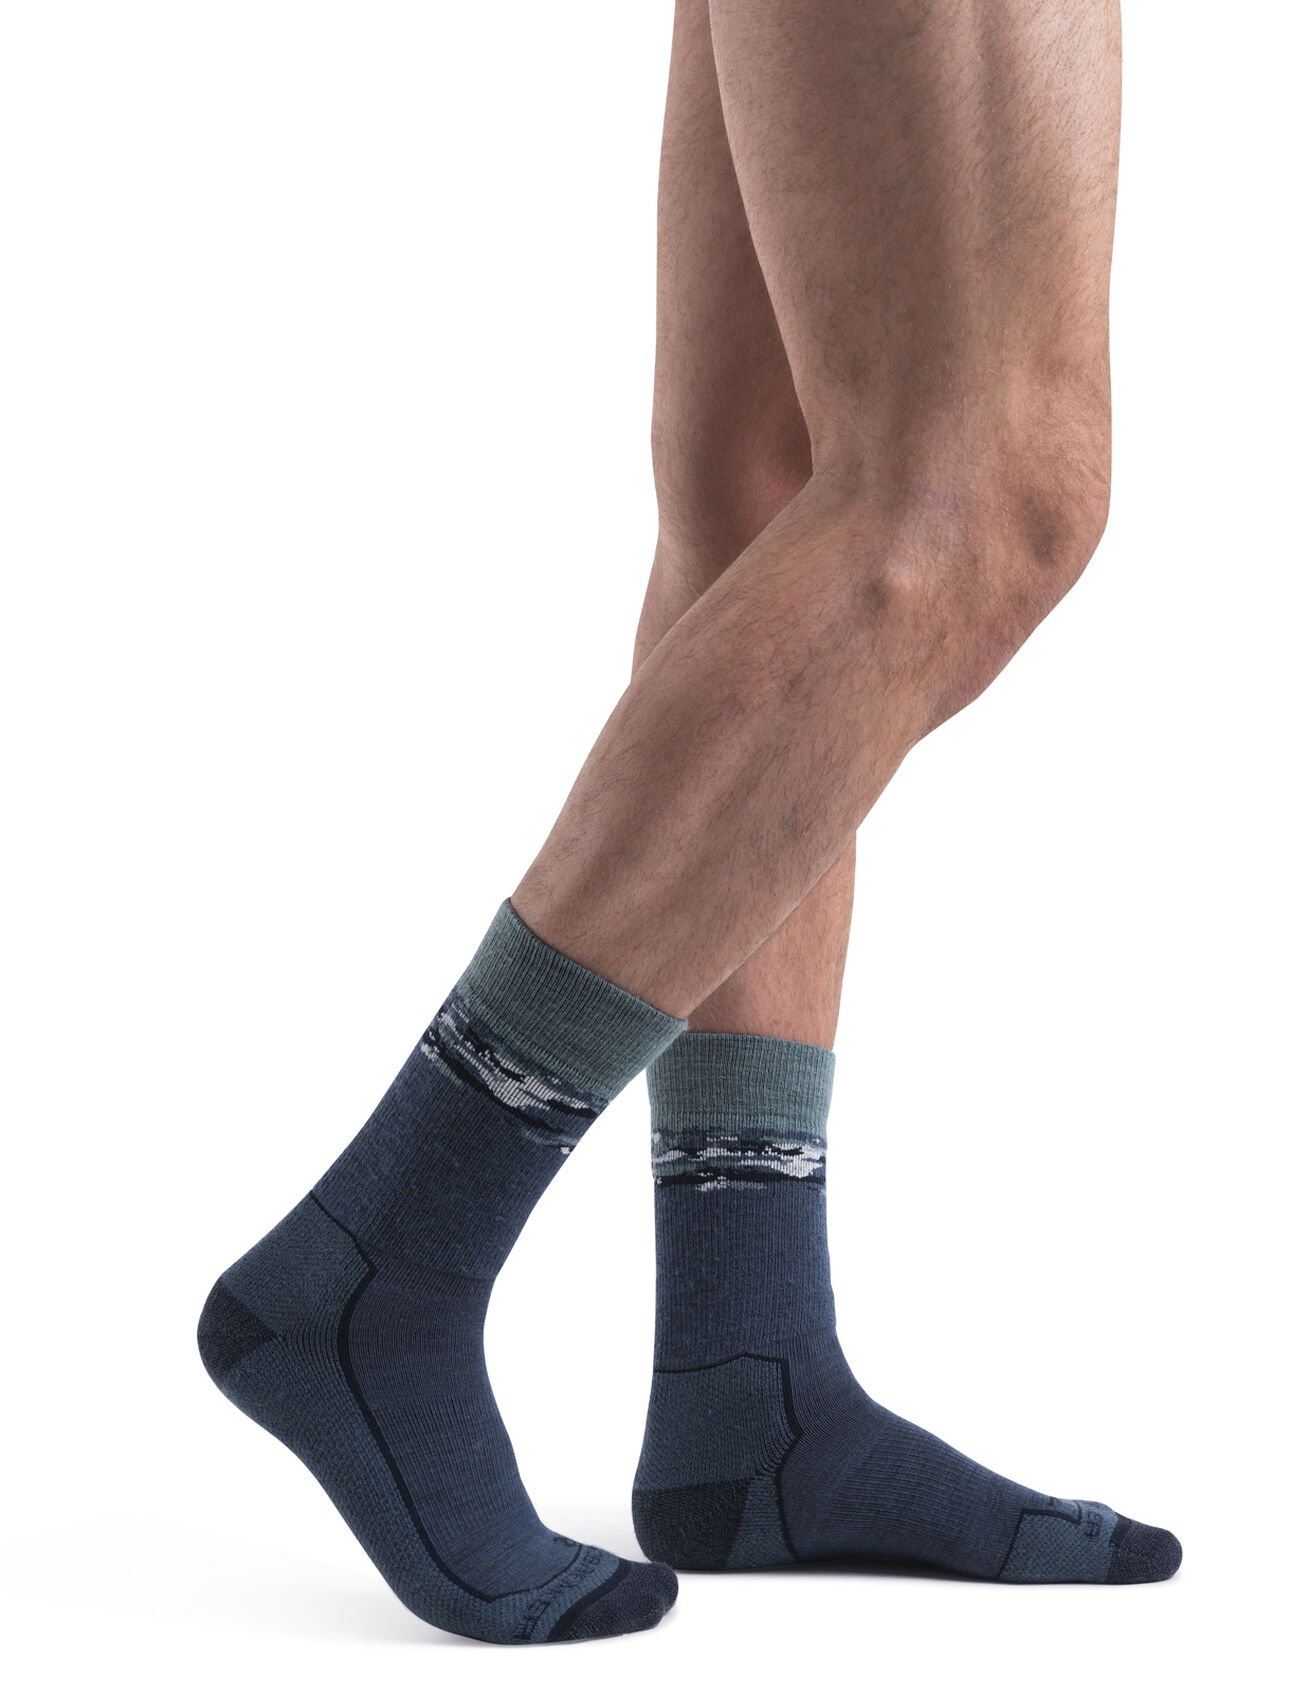 Pánské Ponožky Merino Hike+ Medium Crew Sedimentary Ponožky Hike+ Medium Crew Sedimentary jsou odolné ponožky z merino vlny, které jsou pružné, prodyšné a nezachytávají pachy. Dopřejí vám anatomicky tvarovaný design, délku pod lýtka a plné polstrování – ideální pro jednodenní túry nebo výlety s přespáním.